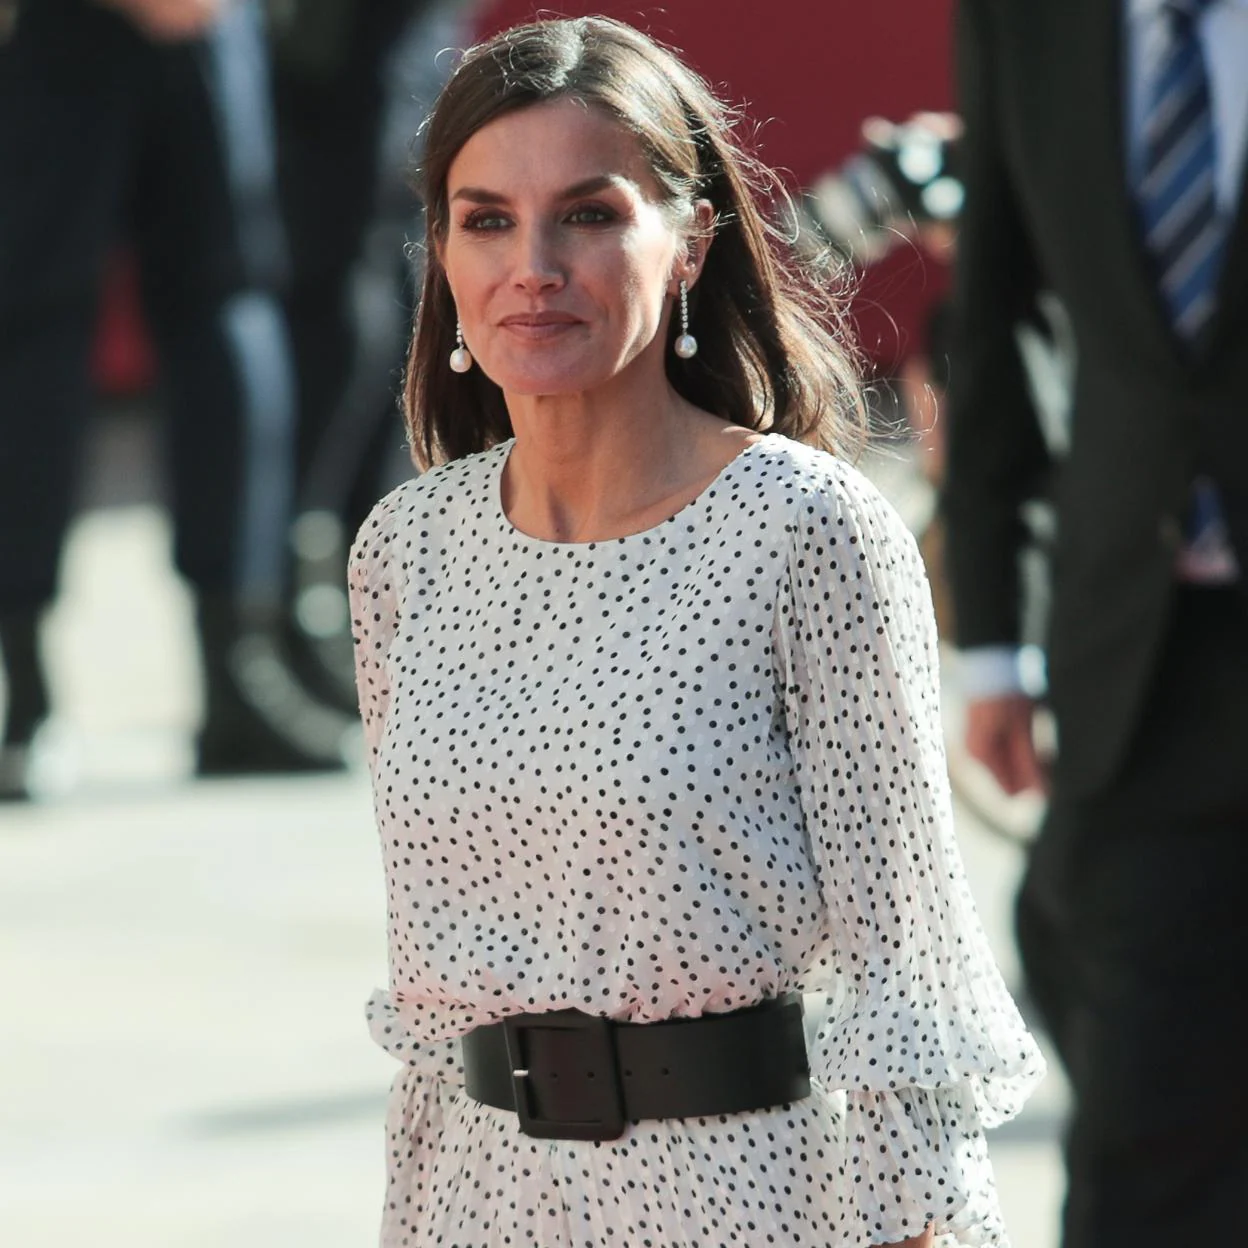 El fallo de vestuario de la reina Letizia: un vestido lunares impecable el que copia a Kate Middleton) y unas que le han jugado una mala pasada | Mujer